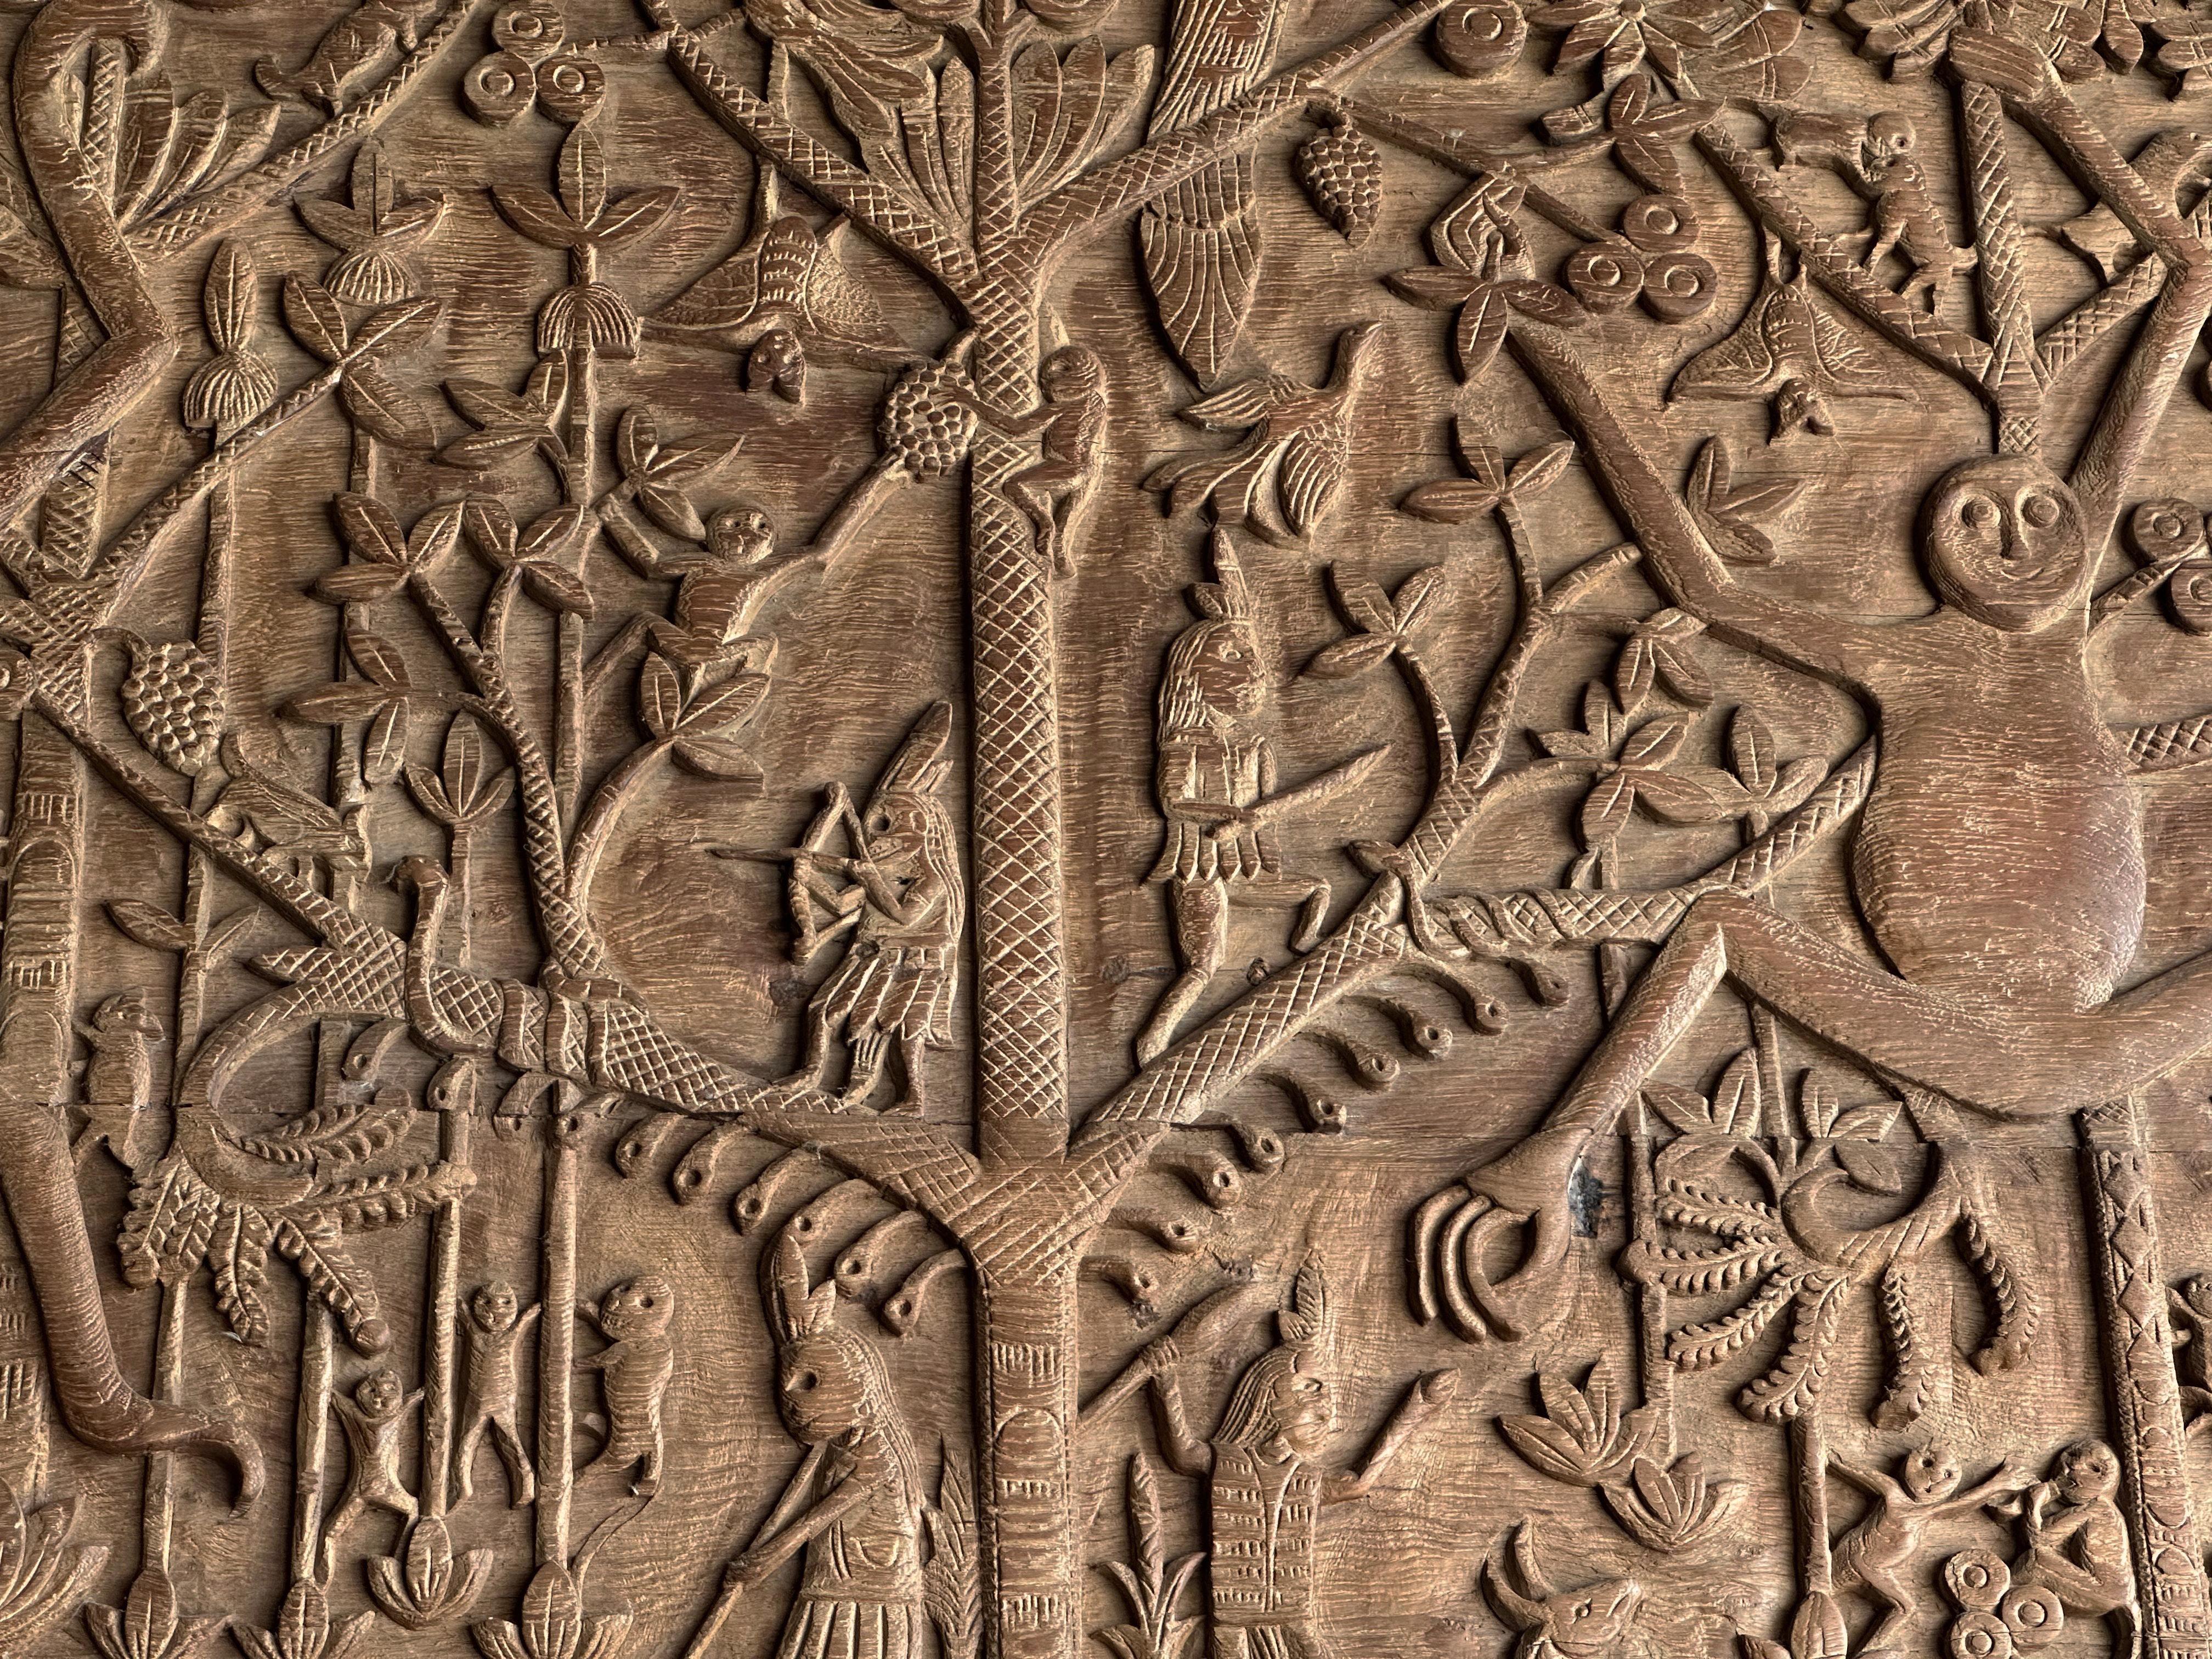 Indonesian Hand-Carved Teak Wood Sculpture Panel Depicting Dayak Mythology For Sale